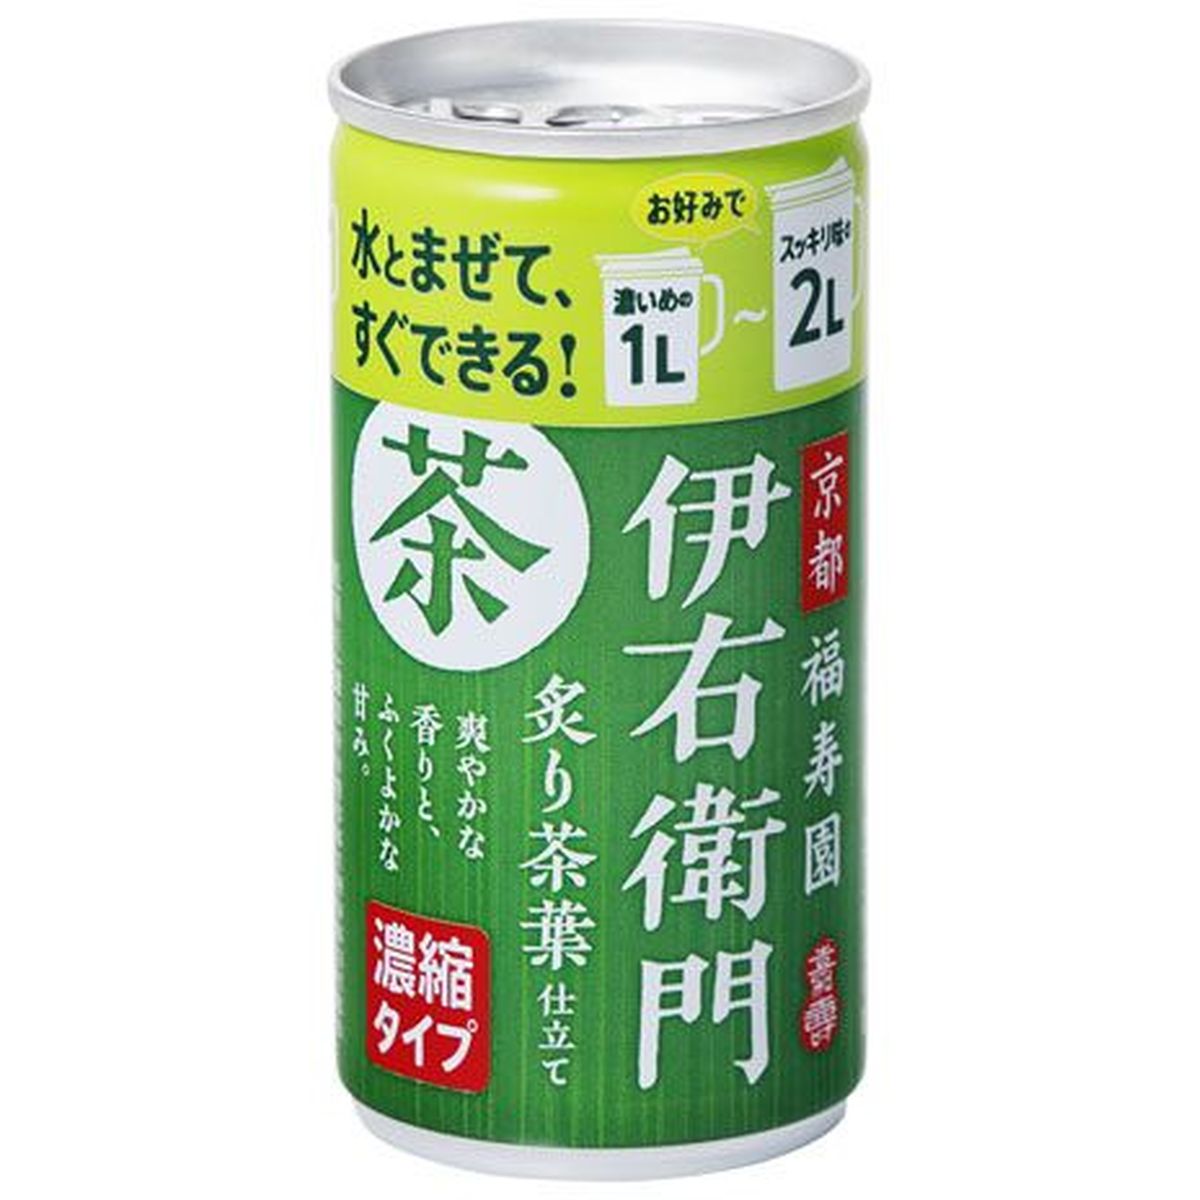 【30個入リ】サントリー 緑茶伊右衛門 炙リ茶葉仕立テ 濃縮タイプ 缶 185g